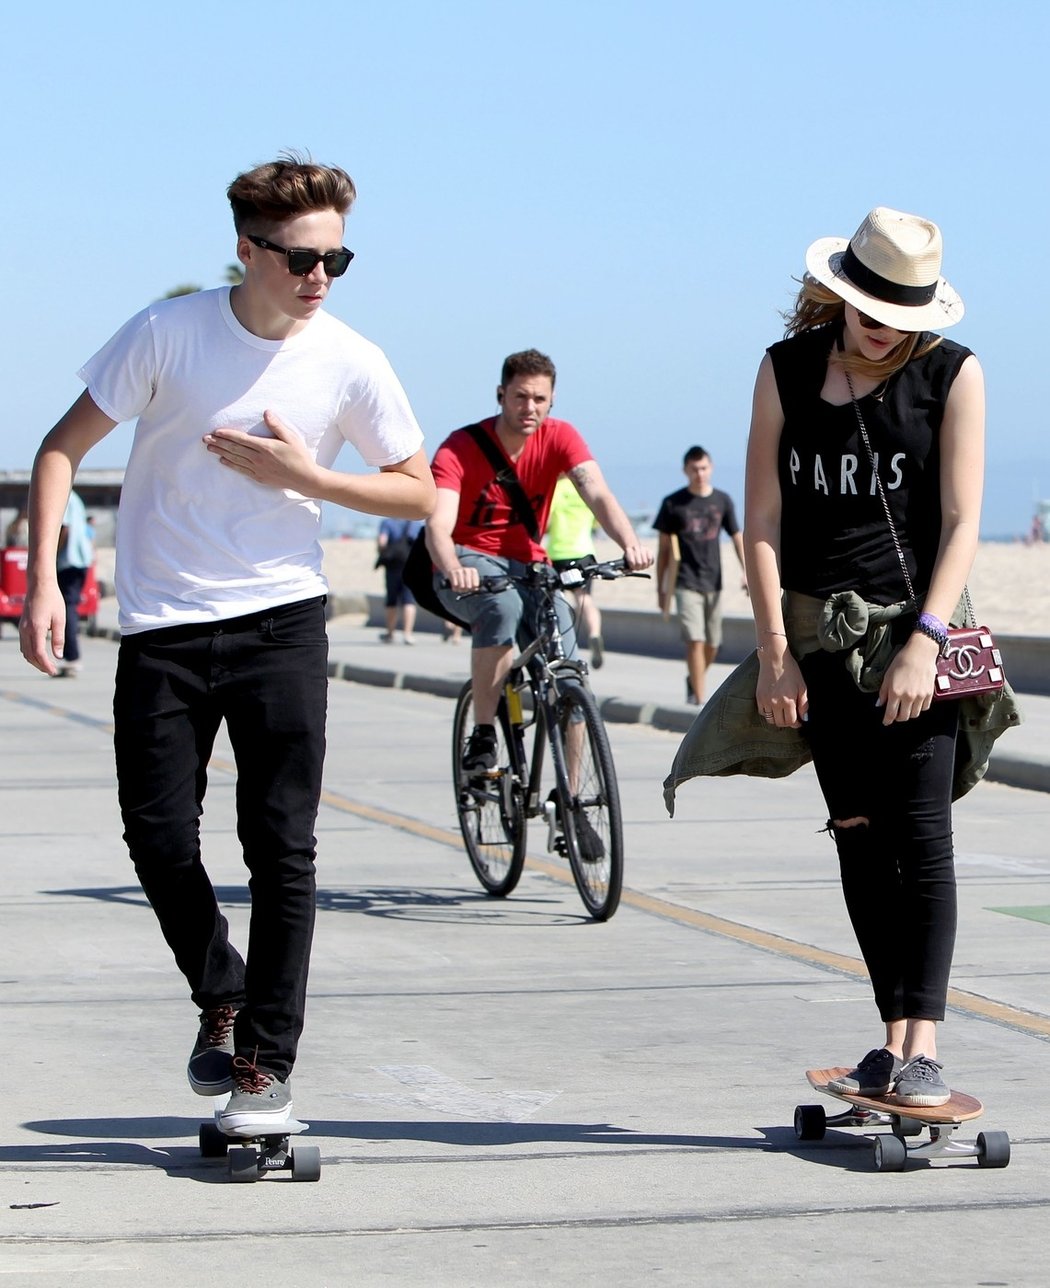 Brooklyn Beckham a Chloe Moretzová vzali skateboardy a vyrazili společně na pláž